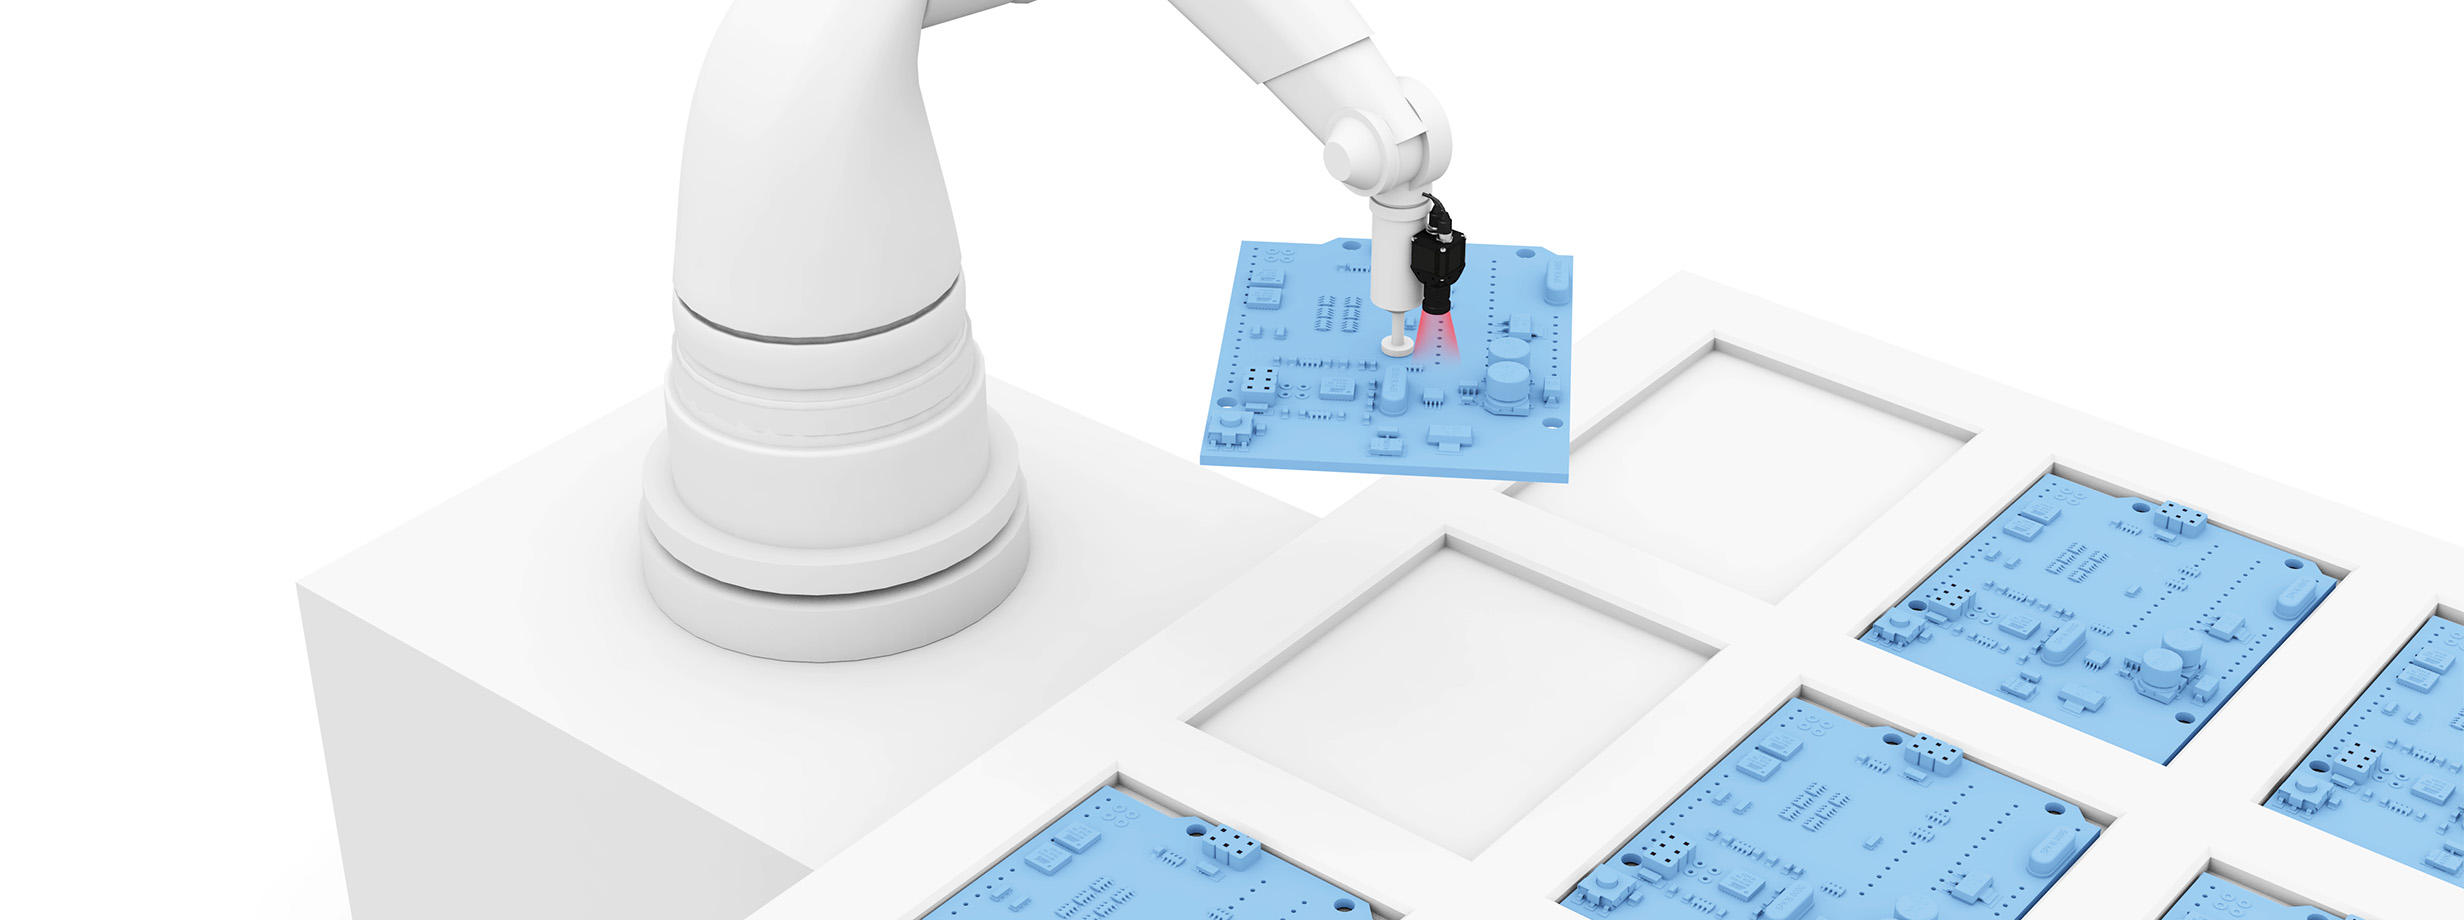 ピック&プレースのアプリケーションにおける精密なロボット制御 image